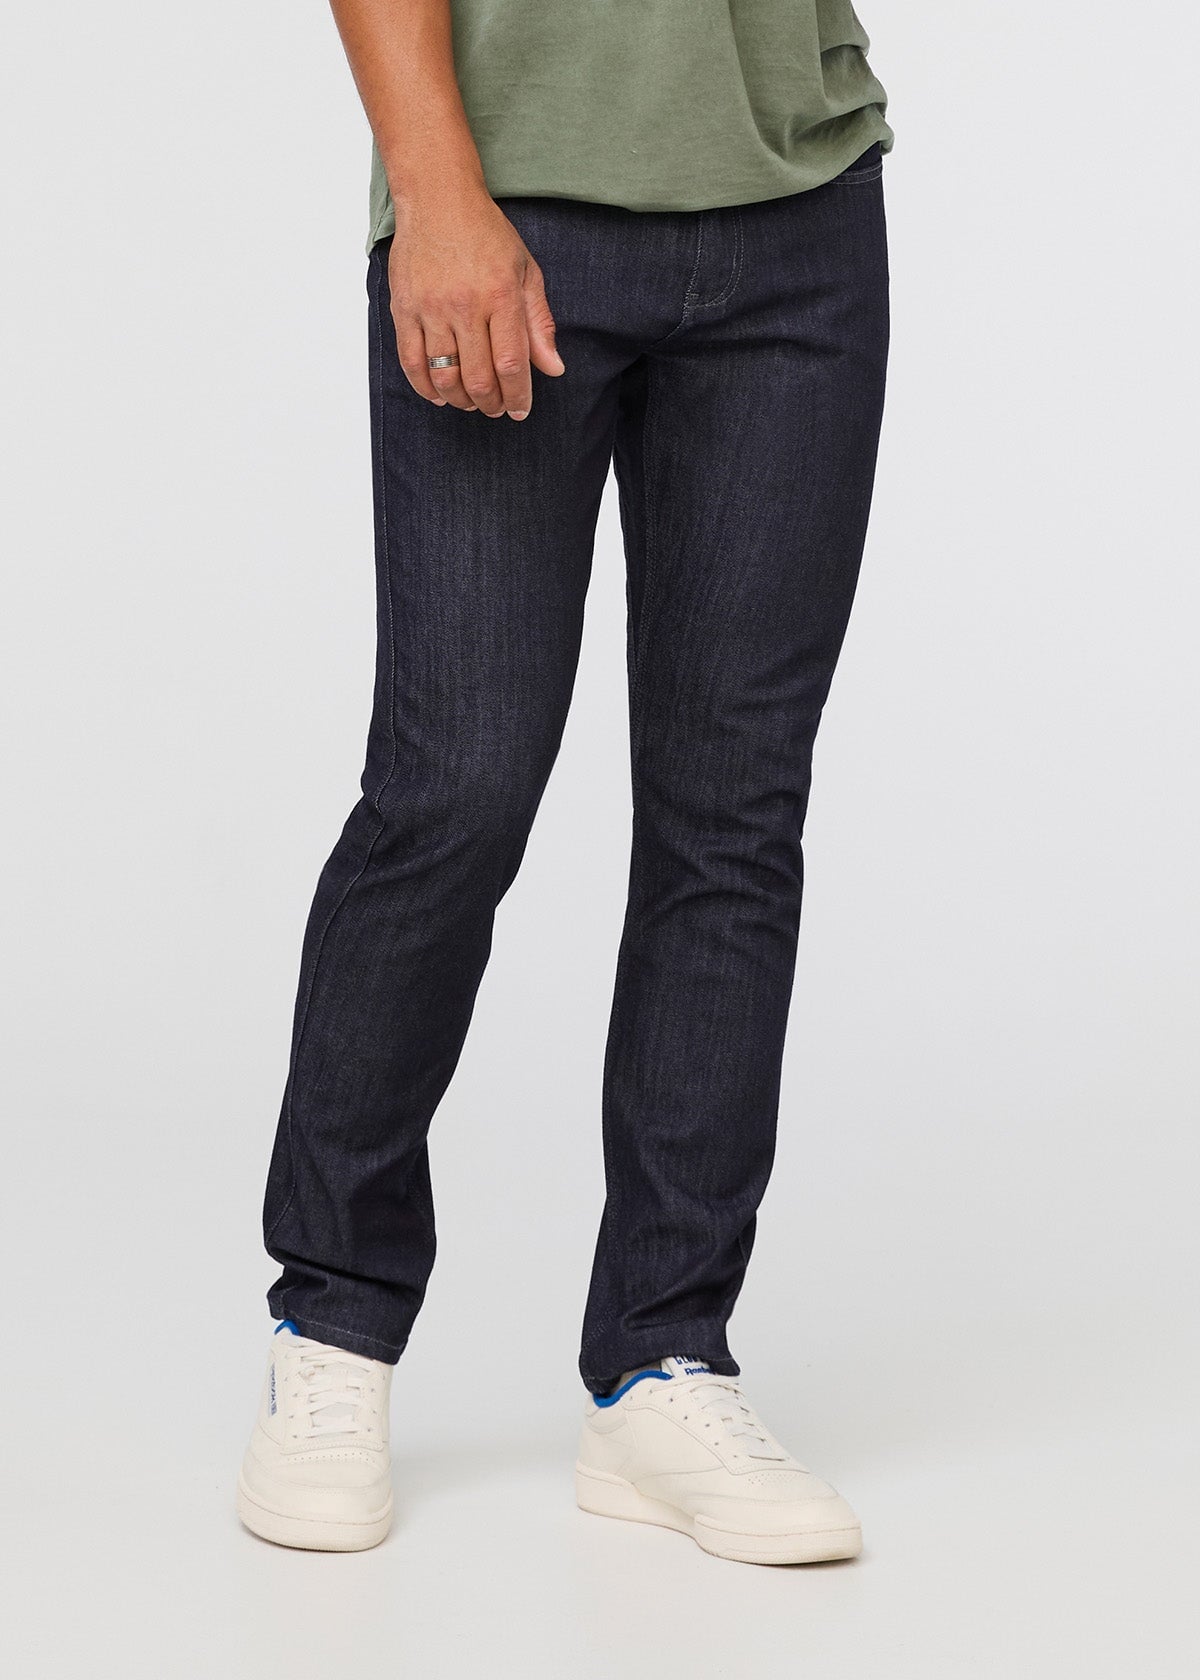 J Brand Spandex Slim Jeans for Men